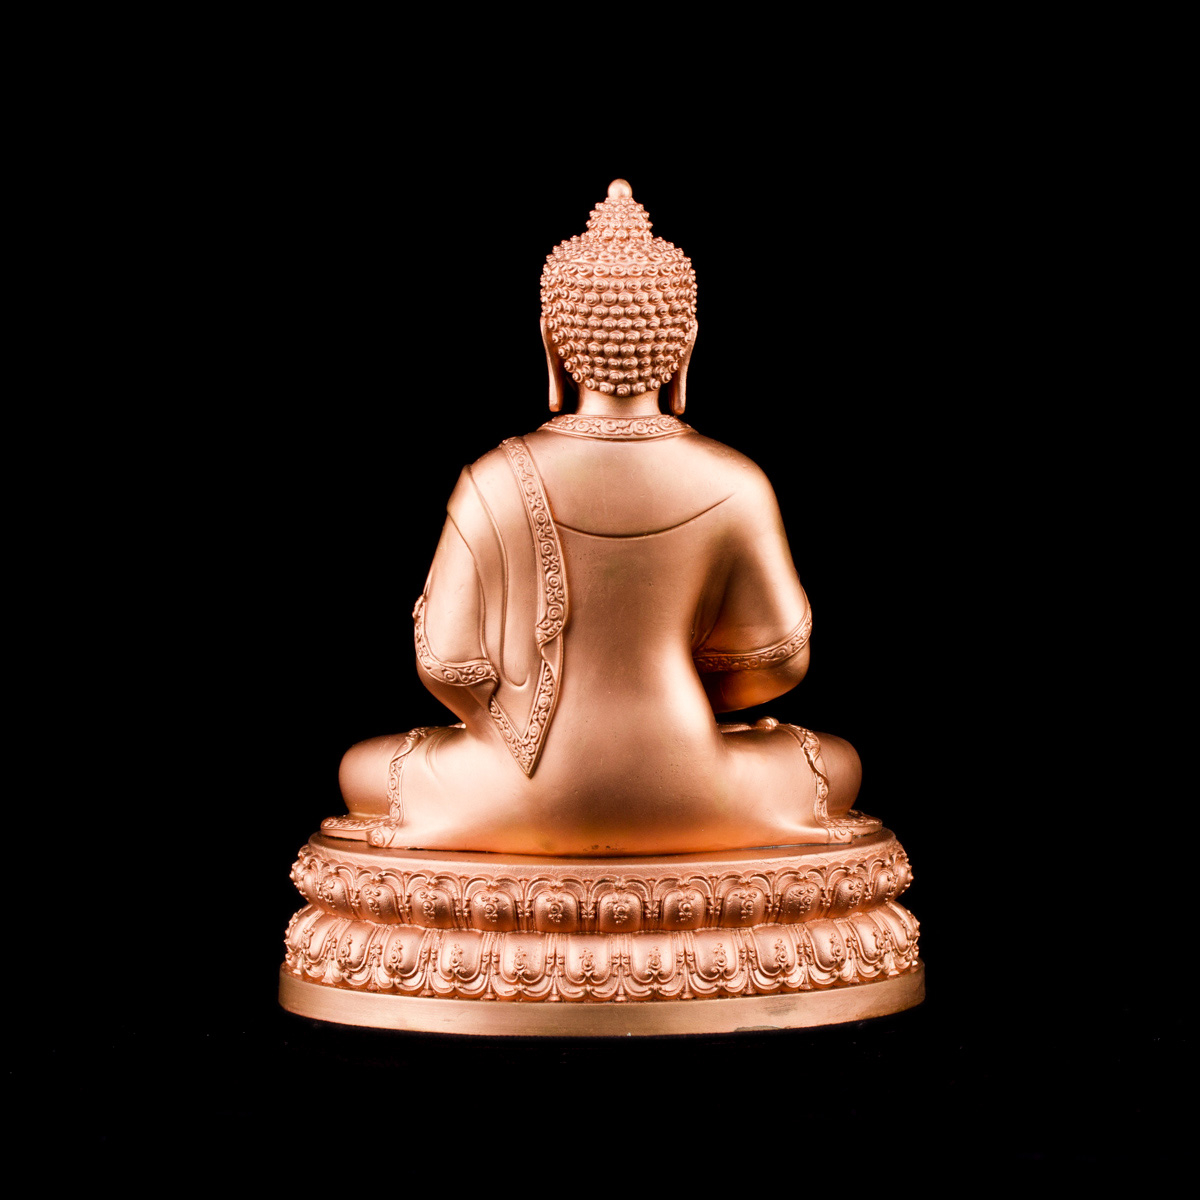 Статуэтка Будды Амитабхи, 15,5 см, 15.5 см